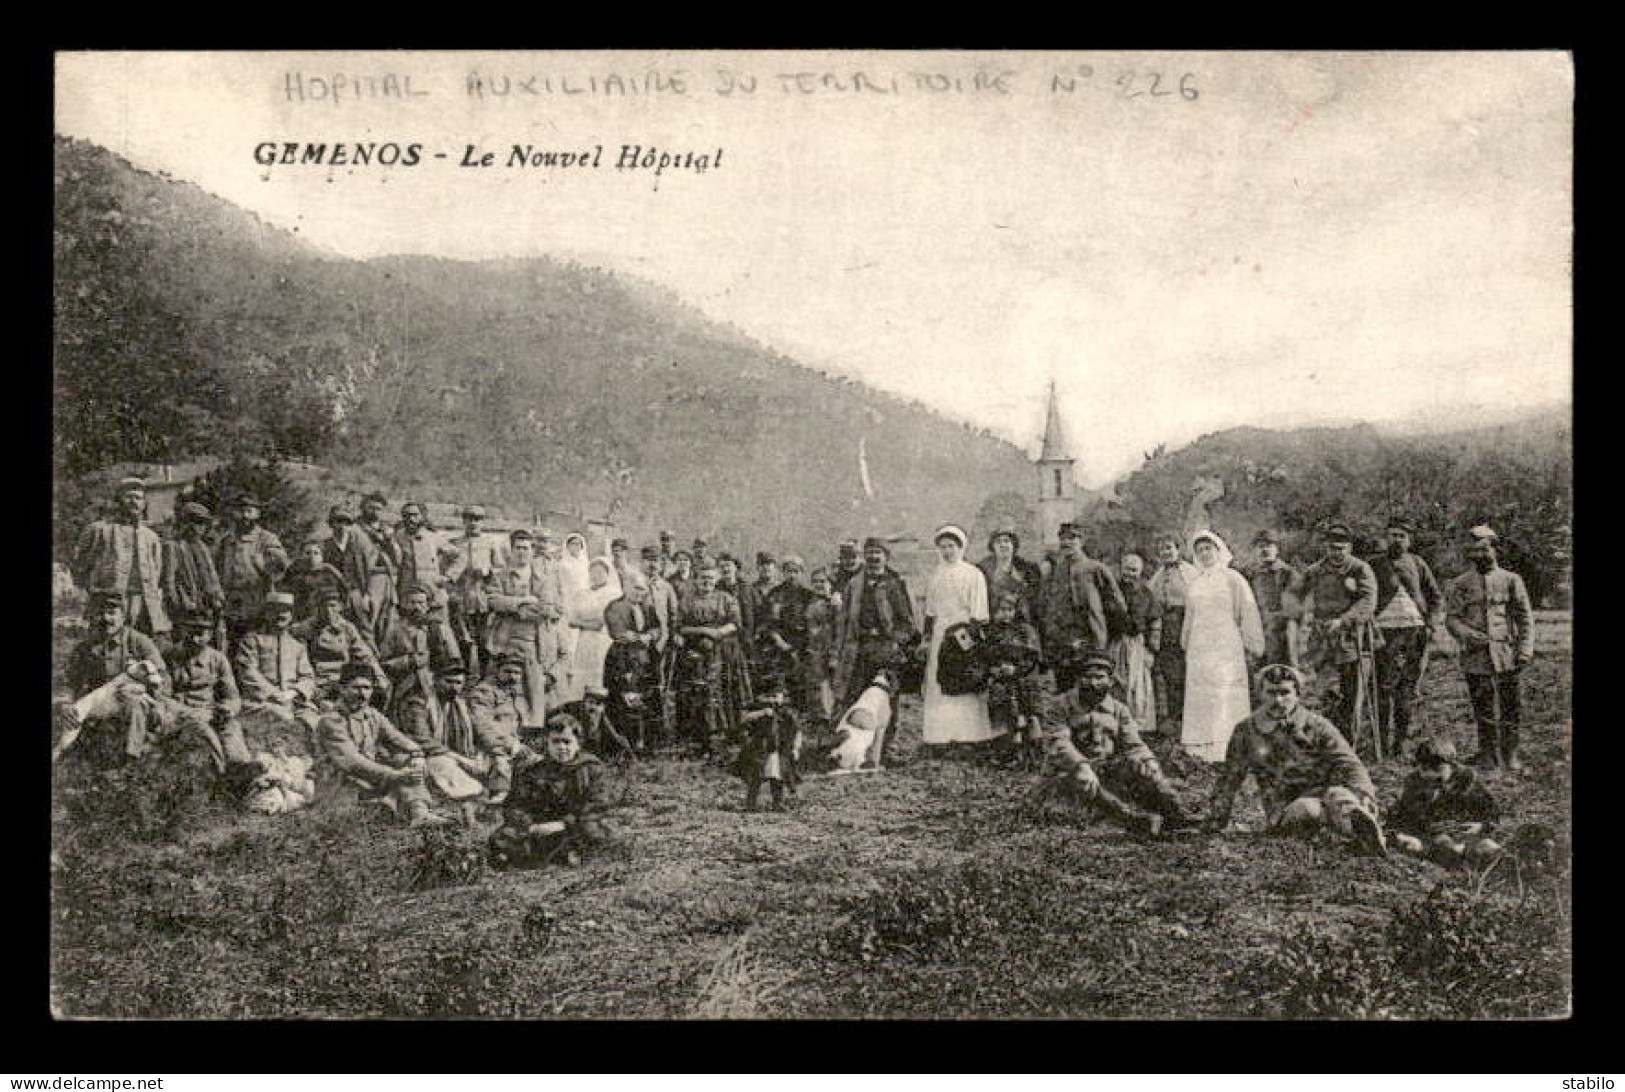 GEMENOS (BOUCHES-DU-RHONE) - CACHET HOPITAL AUXILIAIRE DU TERRITOIRE N°226 - LE NOUVEL HOPITAL - Guerre De 1914-18